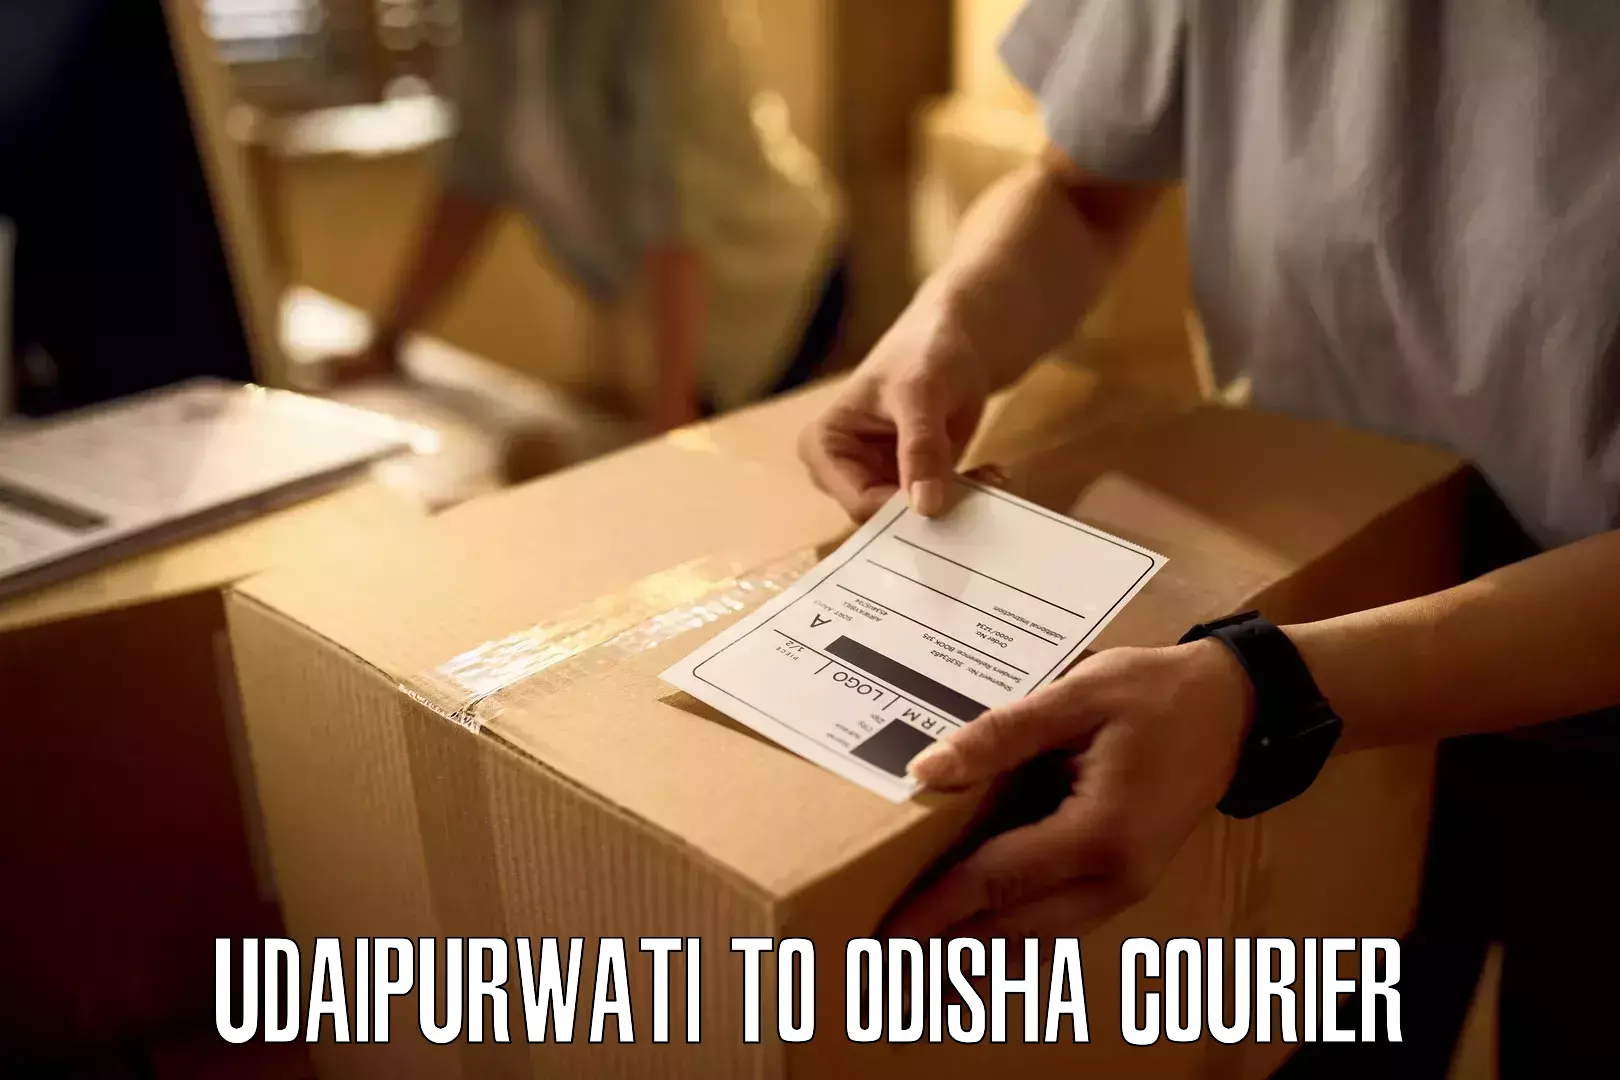 24/7 courier service Udaipurwati to Polasara